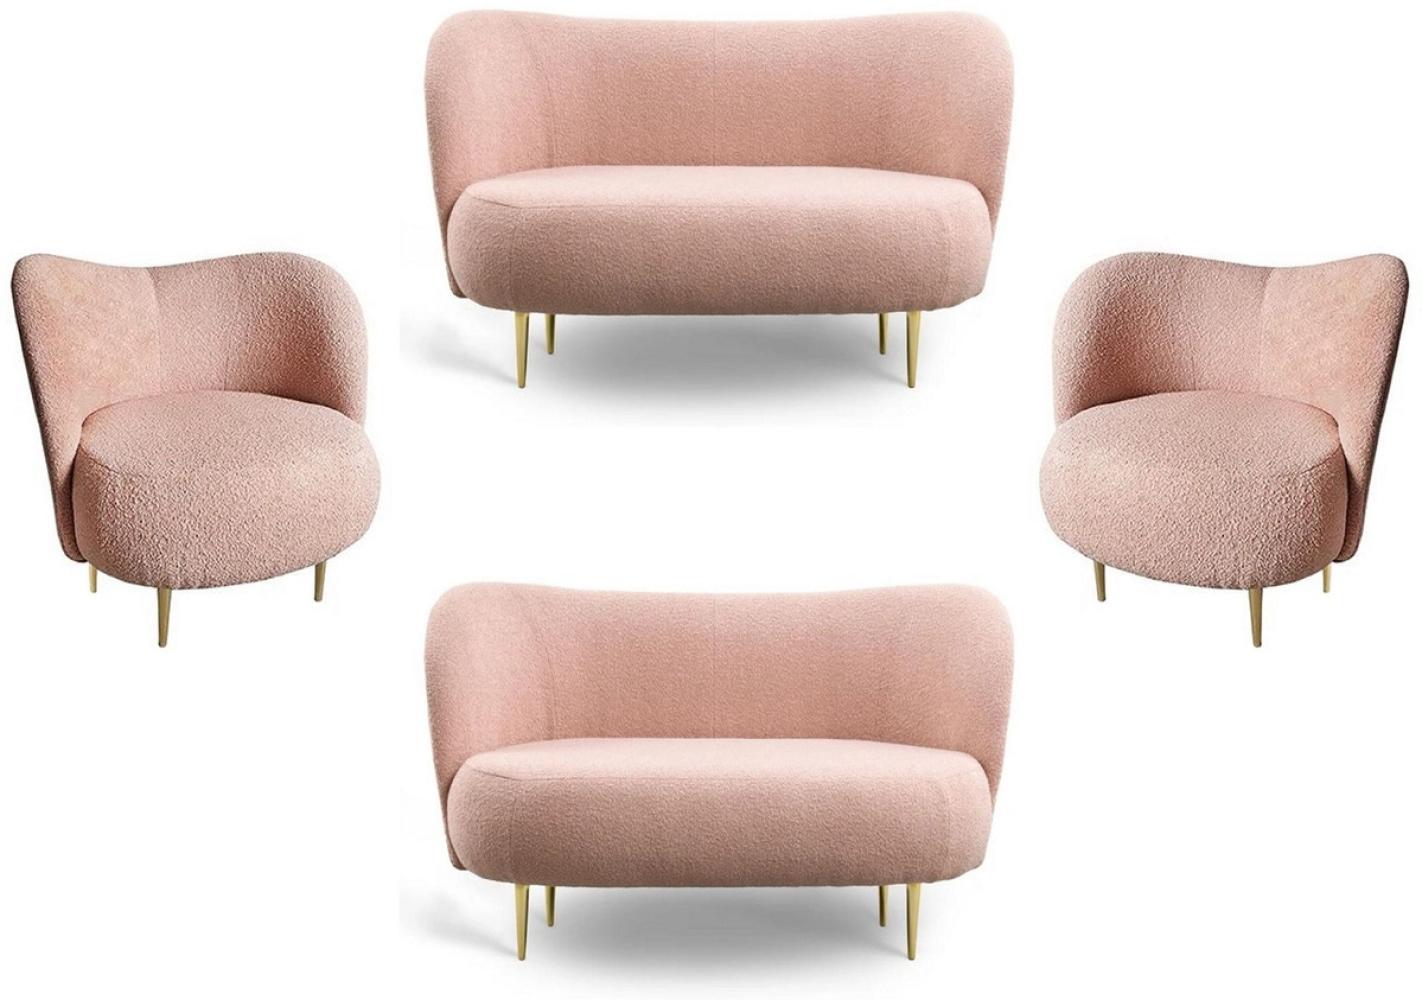 Casa Padrino Luxus Wohnzimmer Set Rosa / Gold - 2 Luxus Sofas mit gebogener Rückenlehne & 2 Luxus Sessel mit gebogener Rückenlehne - Wohnzimmer Möbel - Luxus Möbel - Luxus Einrichtung Bild 1